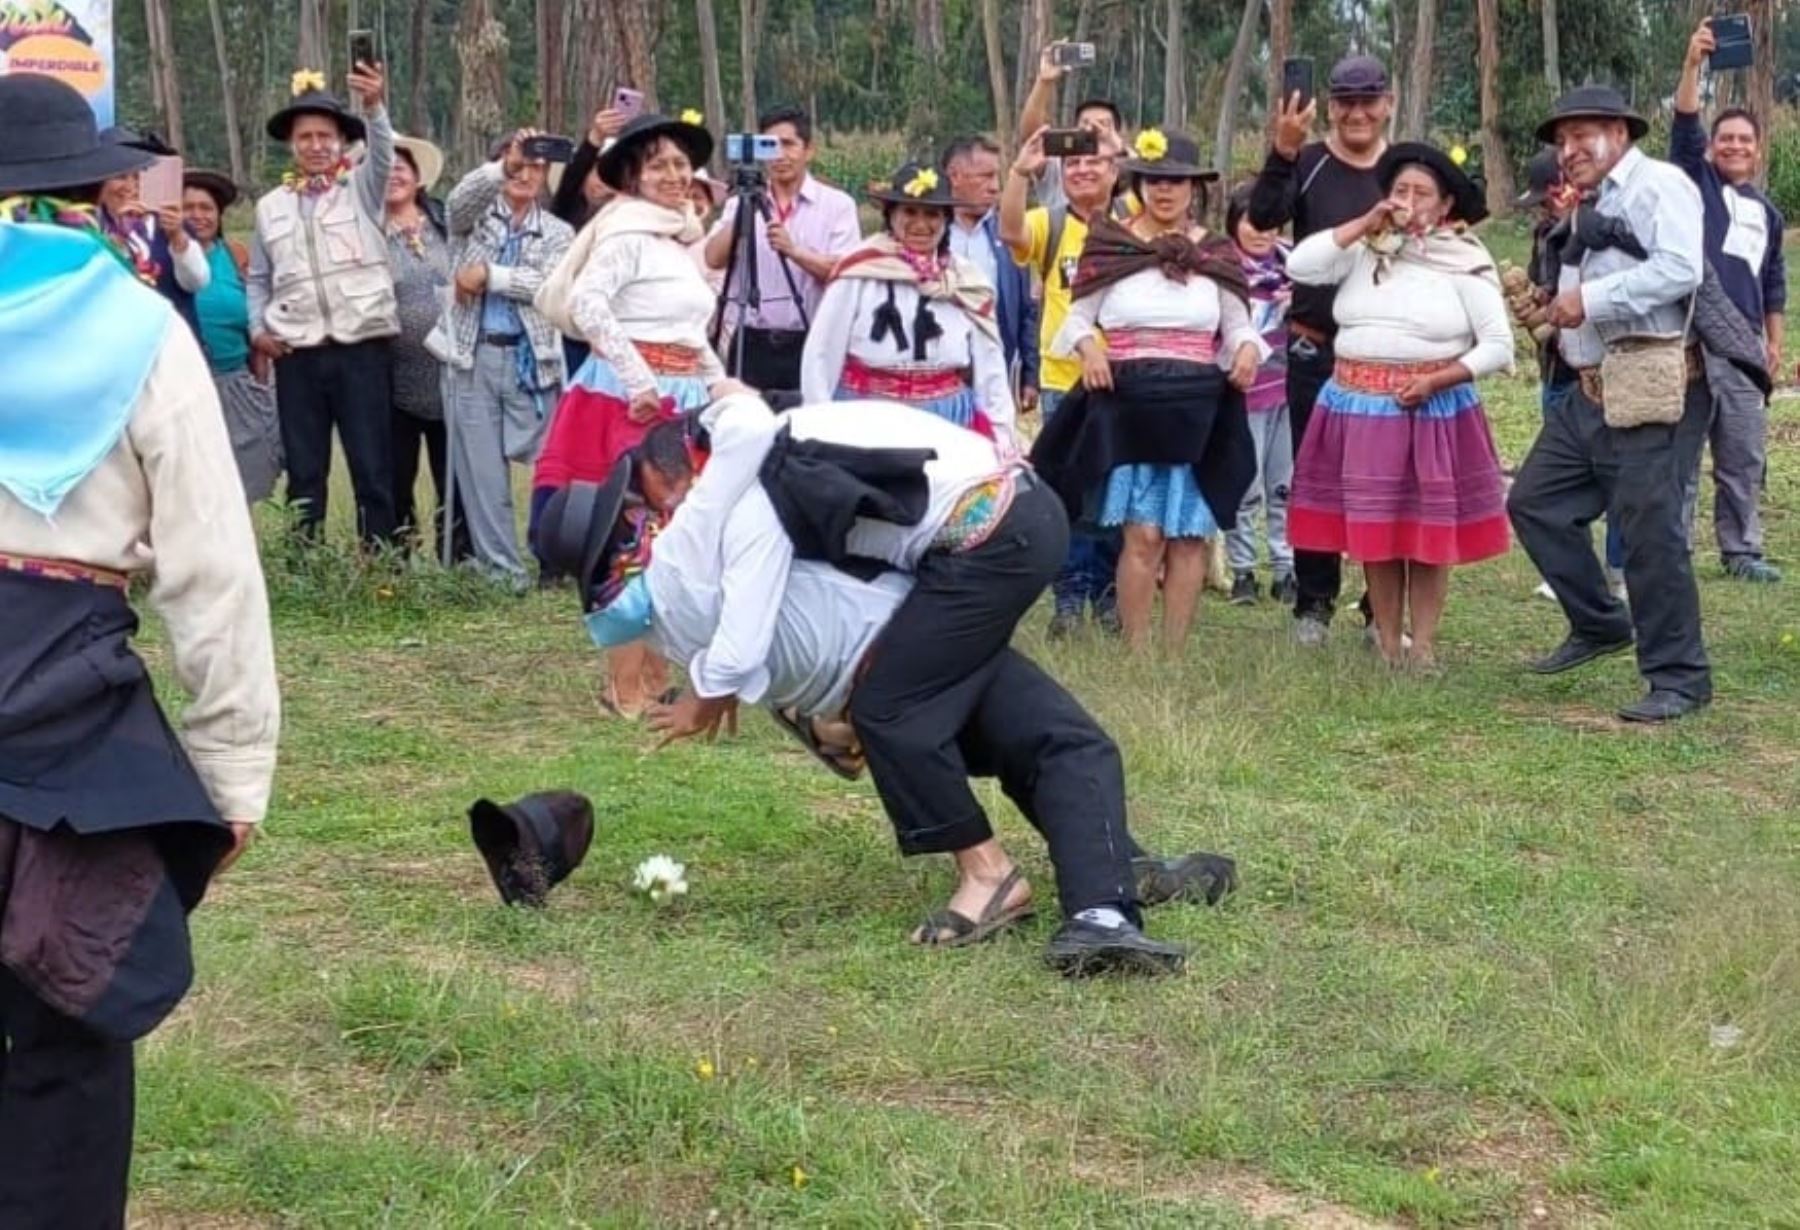 Conoce el "Tacanacuy sangriento" huanca, el ancestral ritual en el que los hombres pelean por el amor de las doncellas, que se revive durante la fiesta del carnaval que se celebra en Huancayo. Foto: Pedro Tinoco.